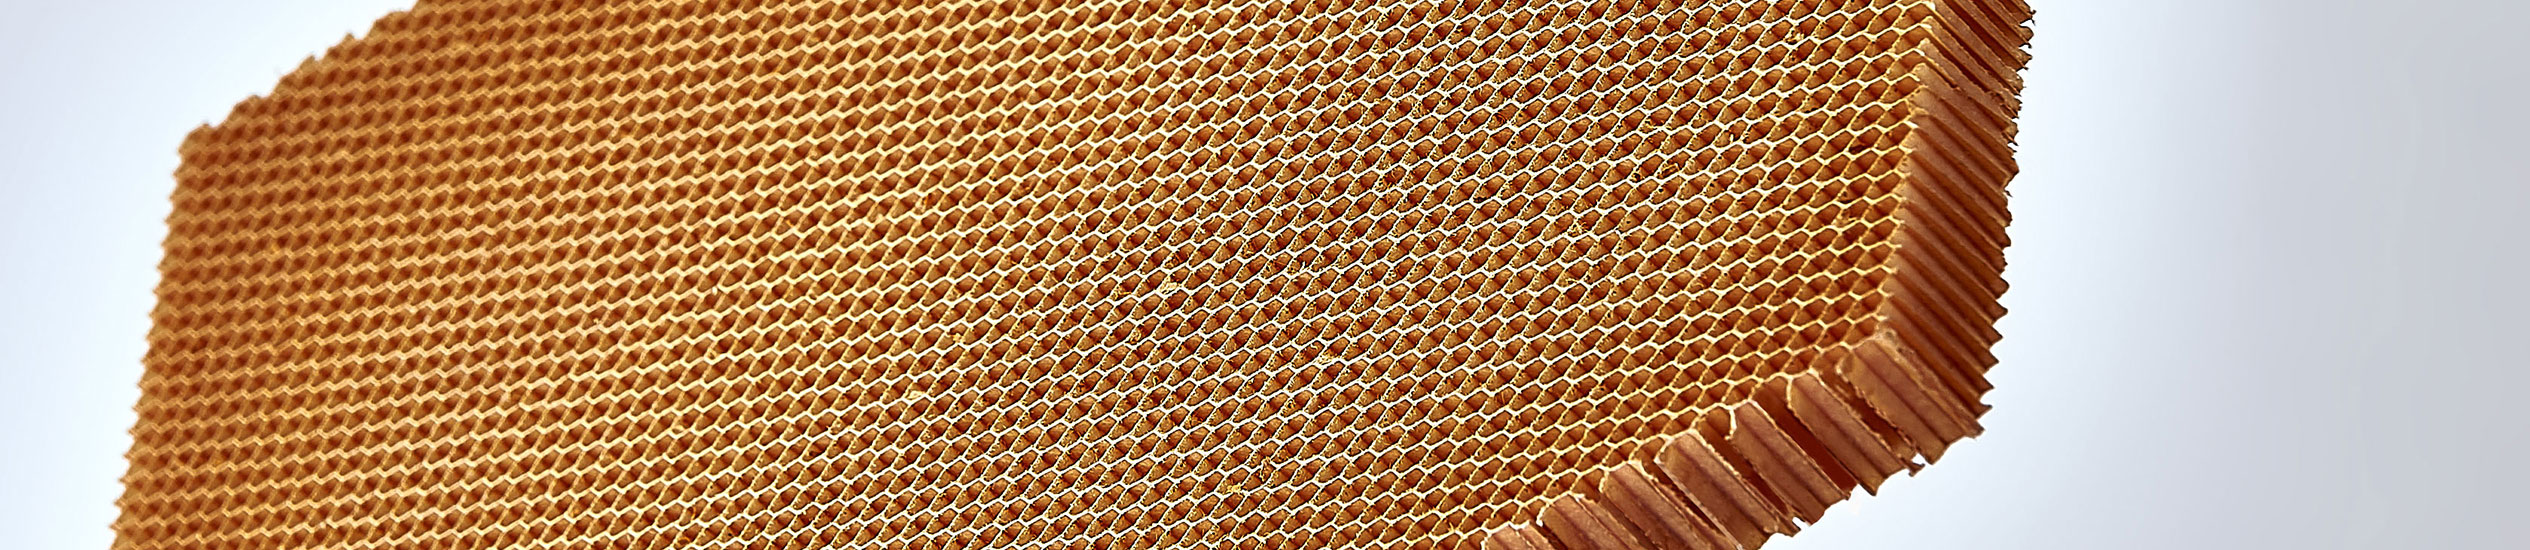 CEL COMPONENTS produit des nids d'abeilles en aluminium, polycarbonate, polyétherimide et polypropylène, mousses, et panneaux sandwich et composites